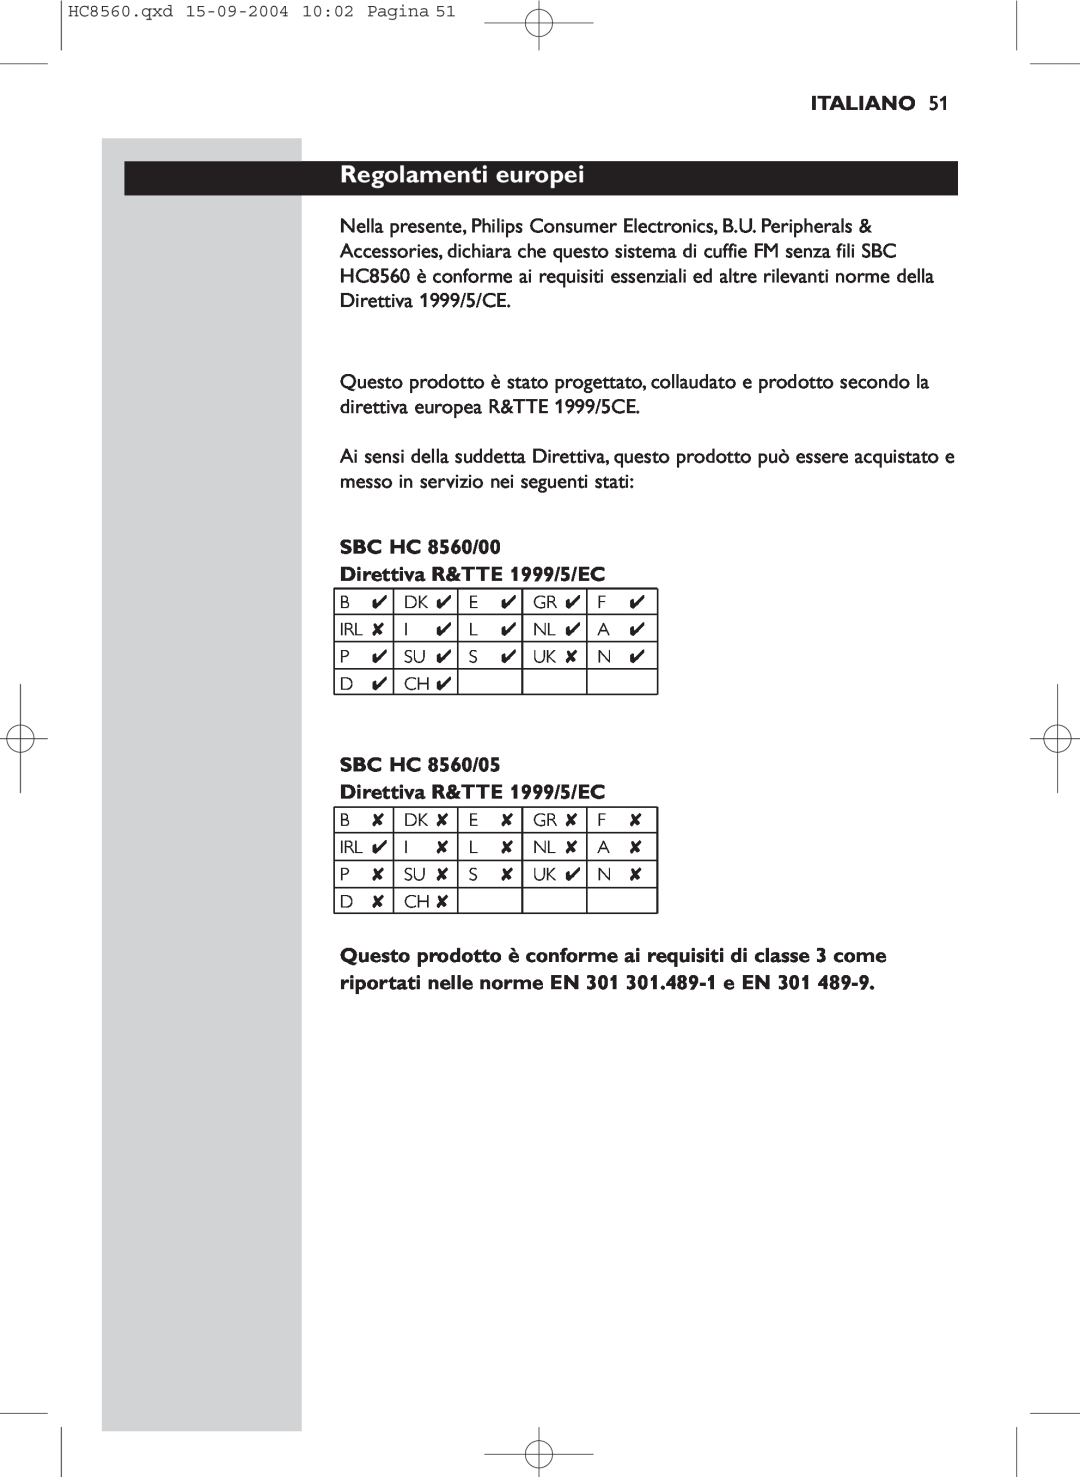 Philips manual Regolamenti europei, Italiano, SBC HC 8560/00 Direttiva R&TTE 1999/5/EC 